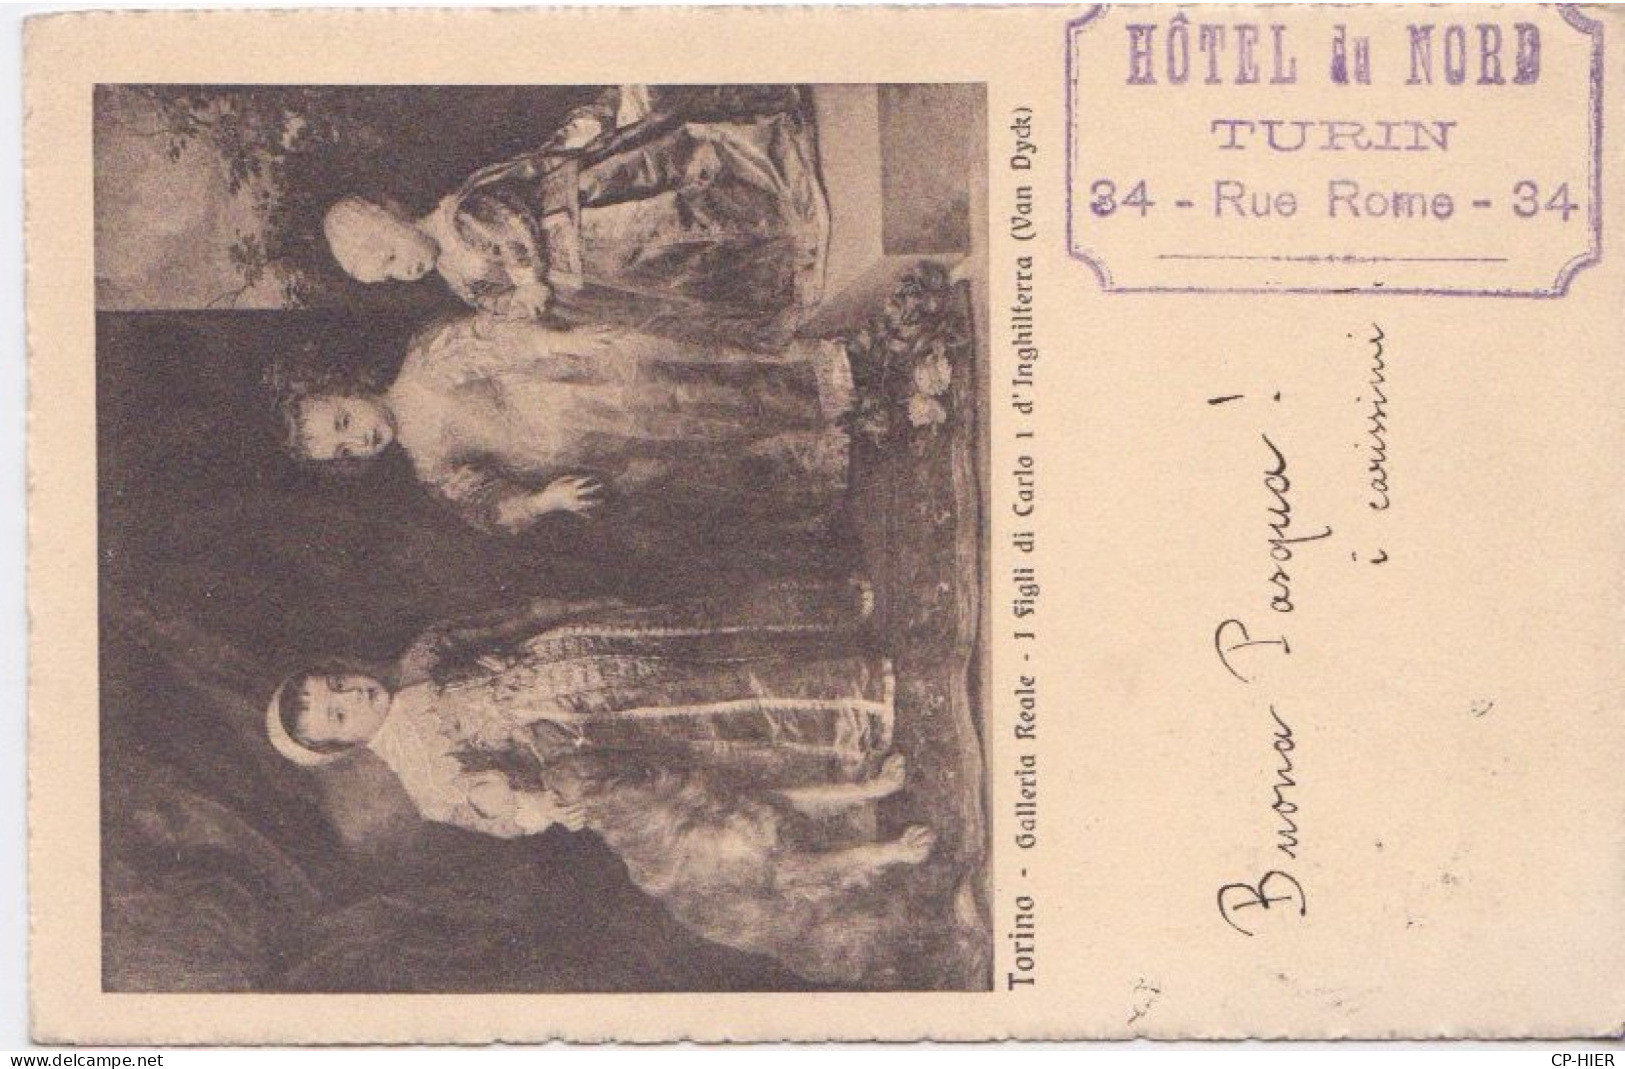 1908 - ITALIE - ITALIA - SICILIA - TORINO - CACHET HOTEL DU NORD DE TURIN  34 RUE DE ROME - Bar, Alberghi & Ristoranti